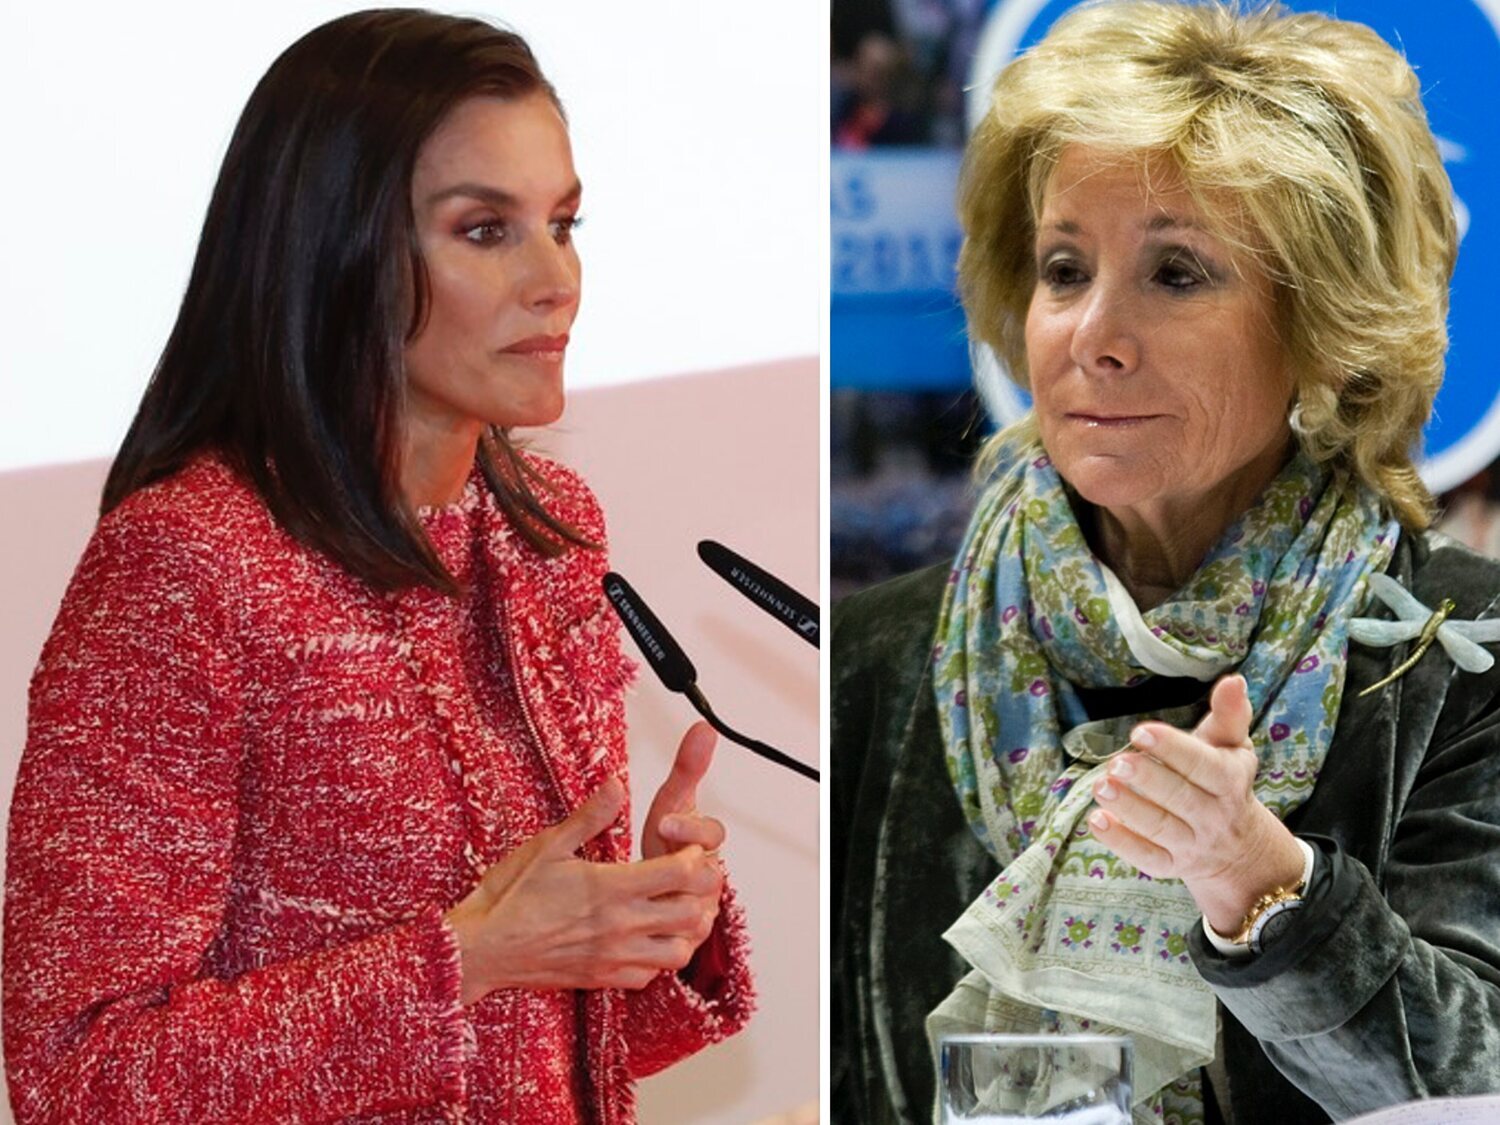 "Lo voy a contar": se hace pasar por Peñafiel y Esperanza Aguirre suelta lo que piensa de la reina